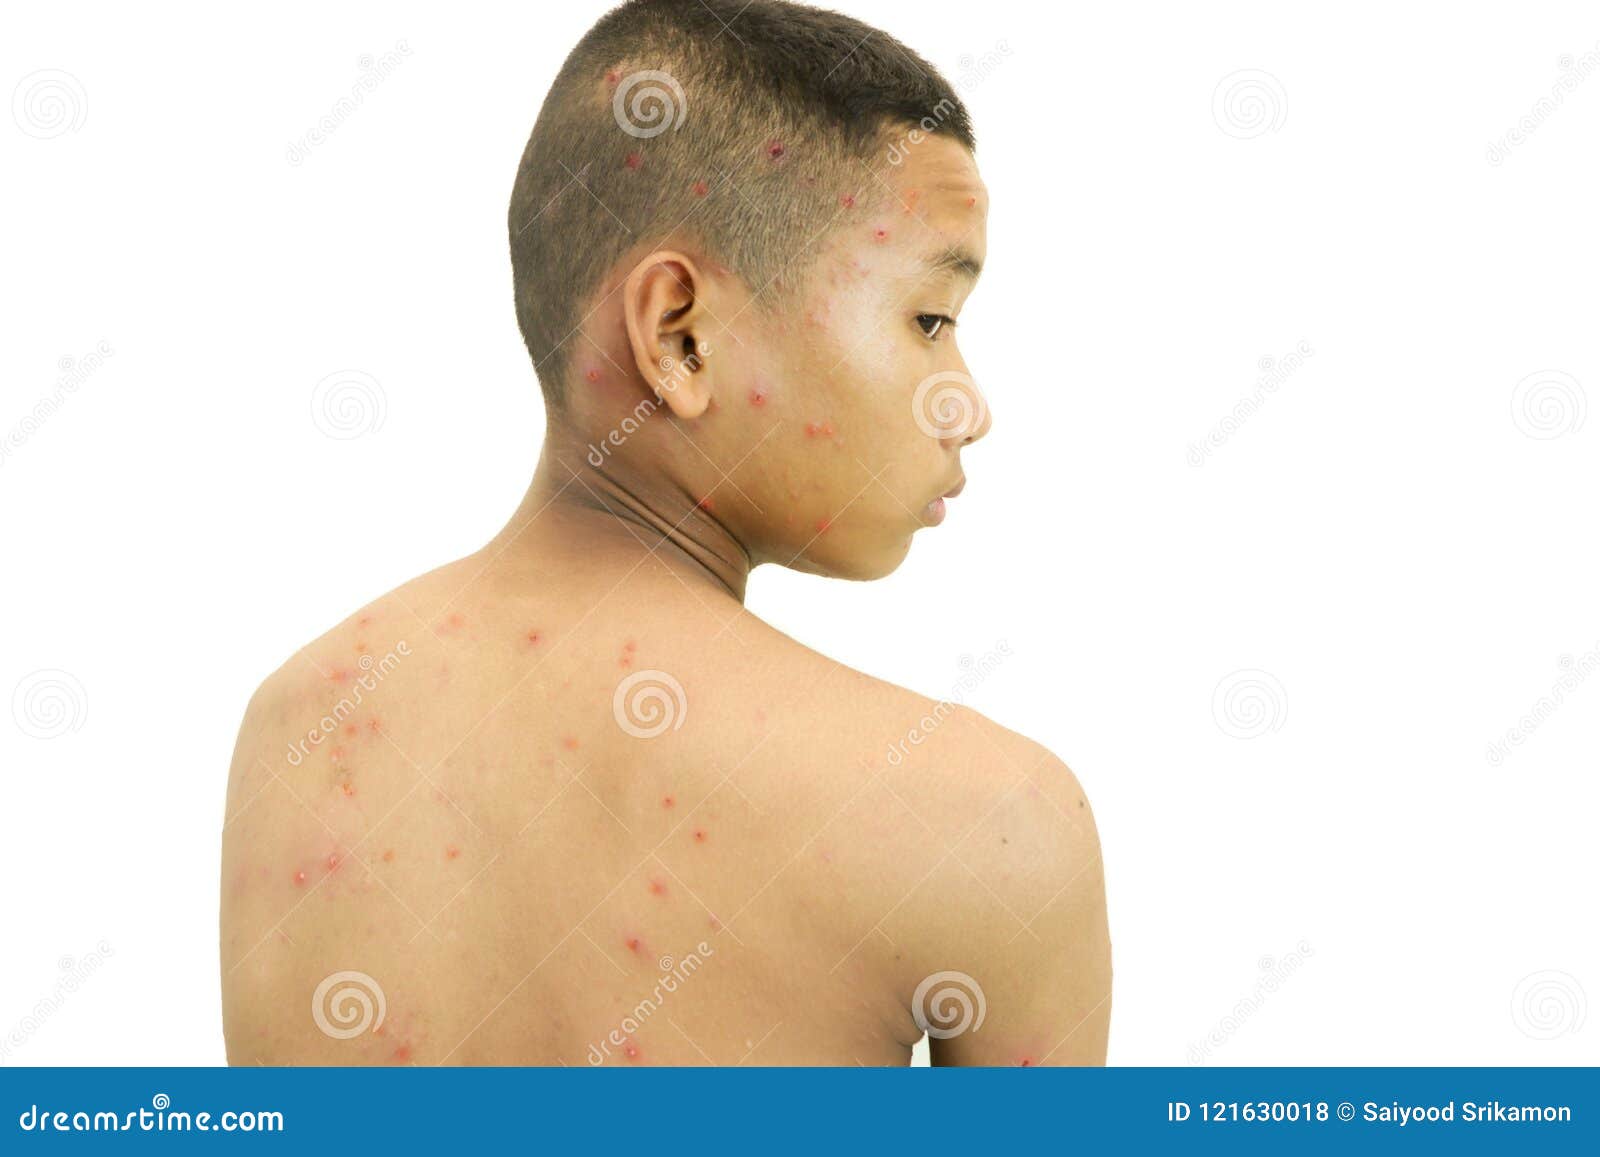 幼儿急疹、麻疹、川崎病、水痘、风疹，如何识别不同皮疹？_澎湃号·湃客_澎湃新闻-The Paper